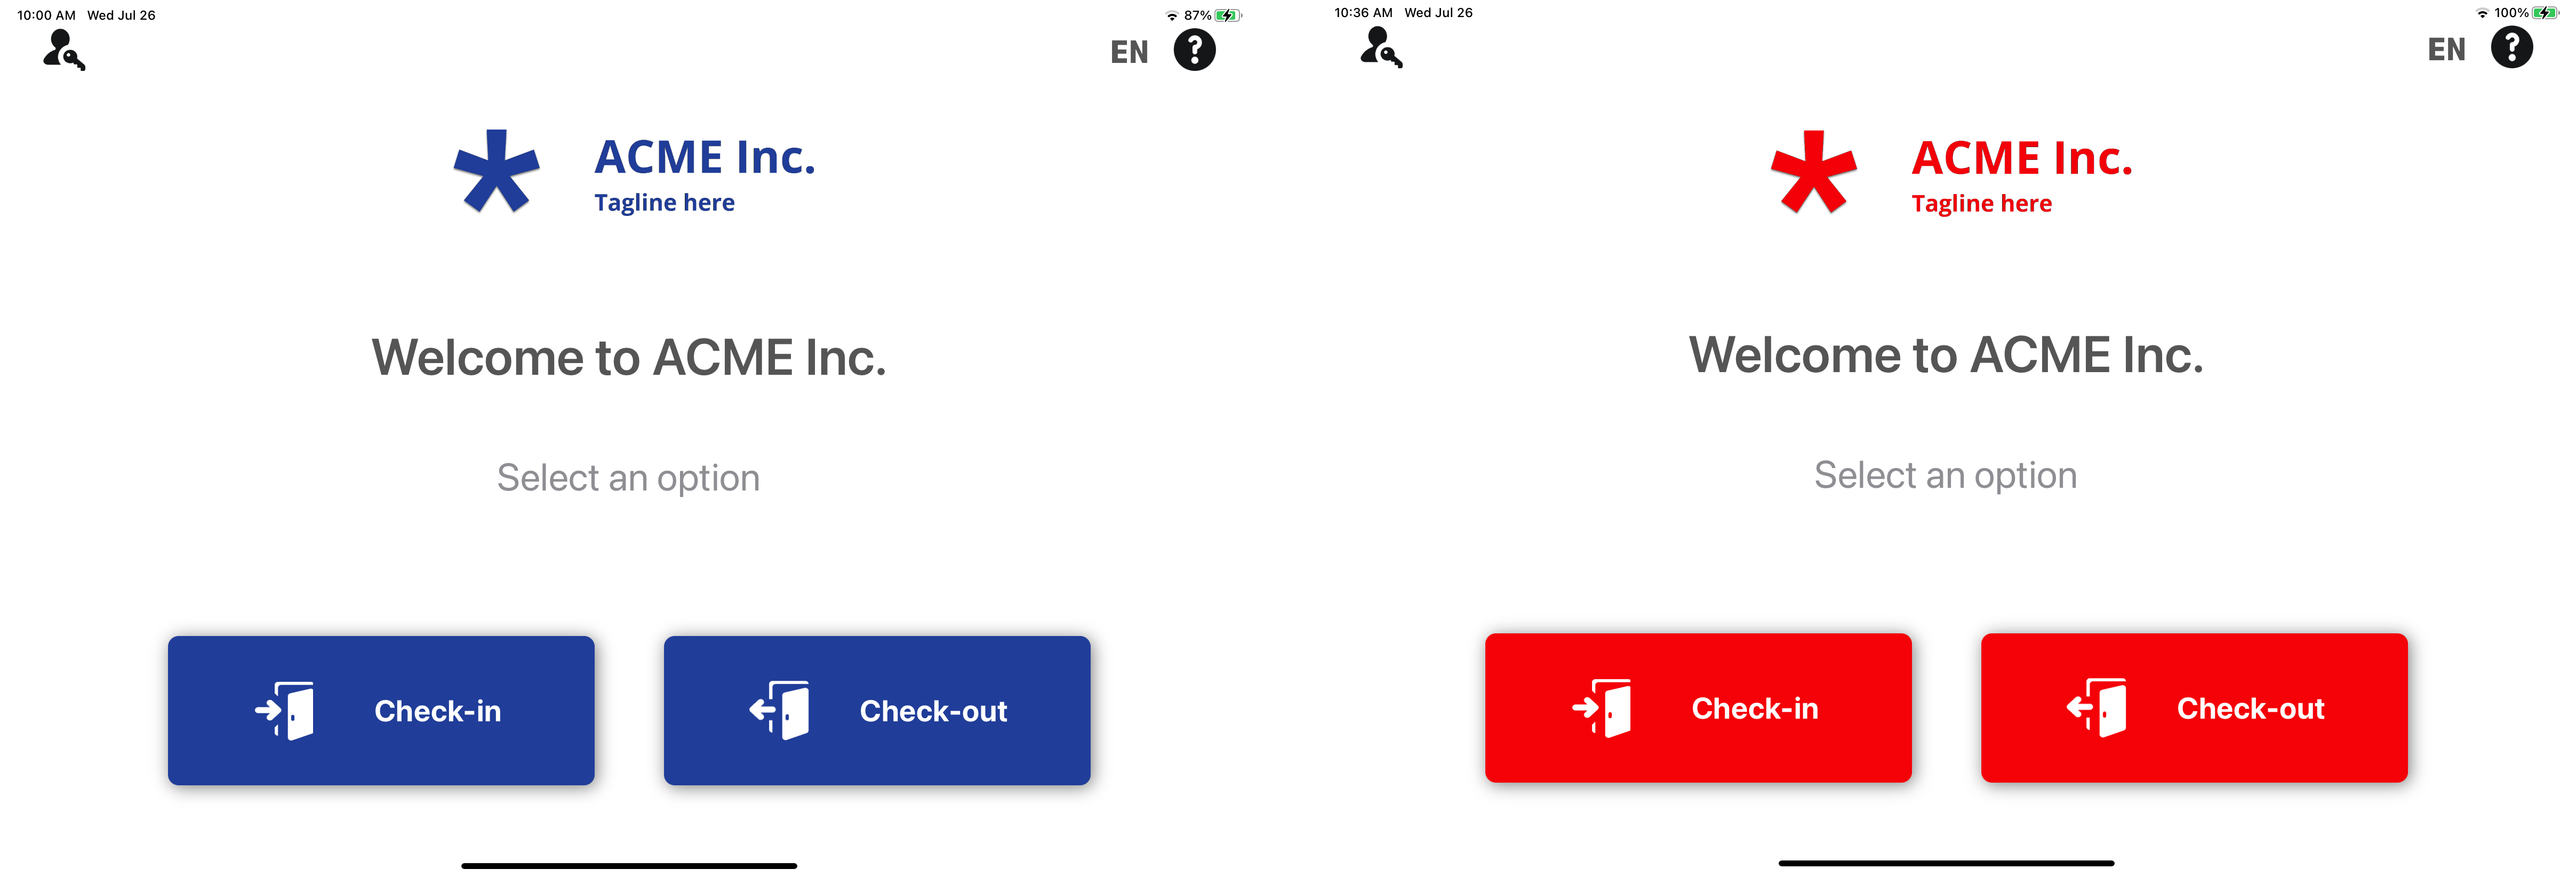 Deux exemples d'écran de bienvenue dans ClearID Self-Service Kiosk affichant les options de personnalisation de l’habillage.